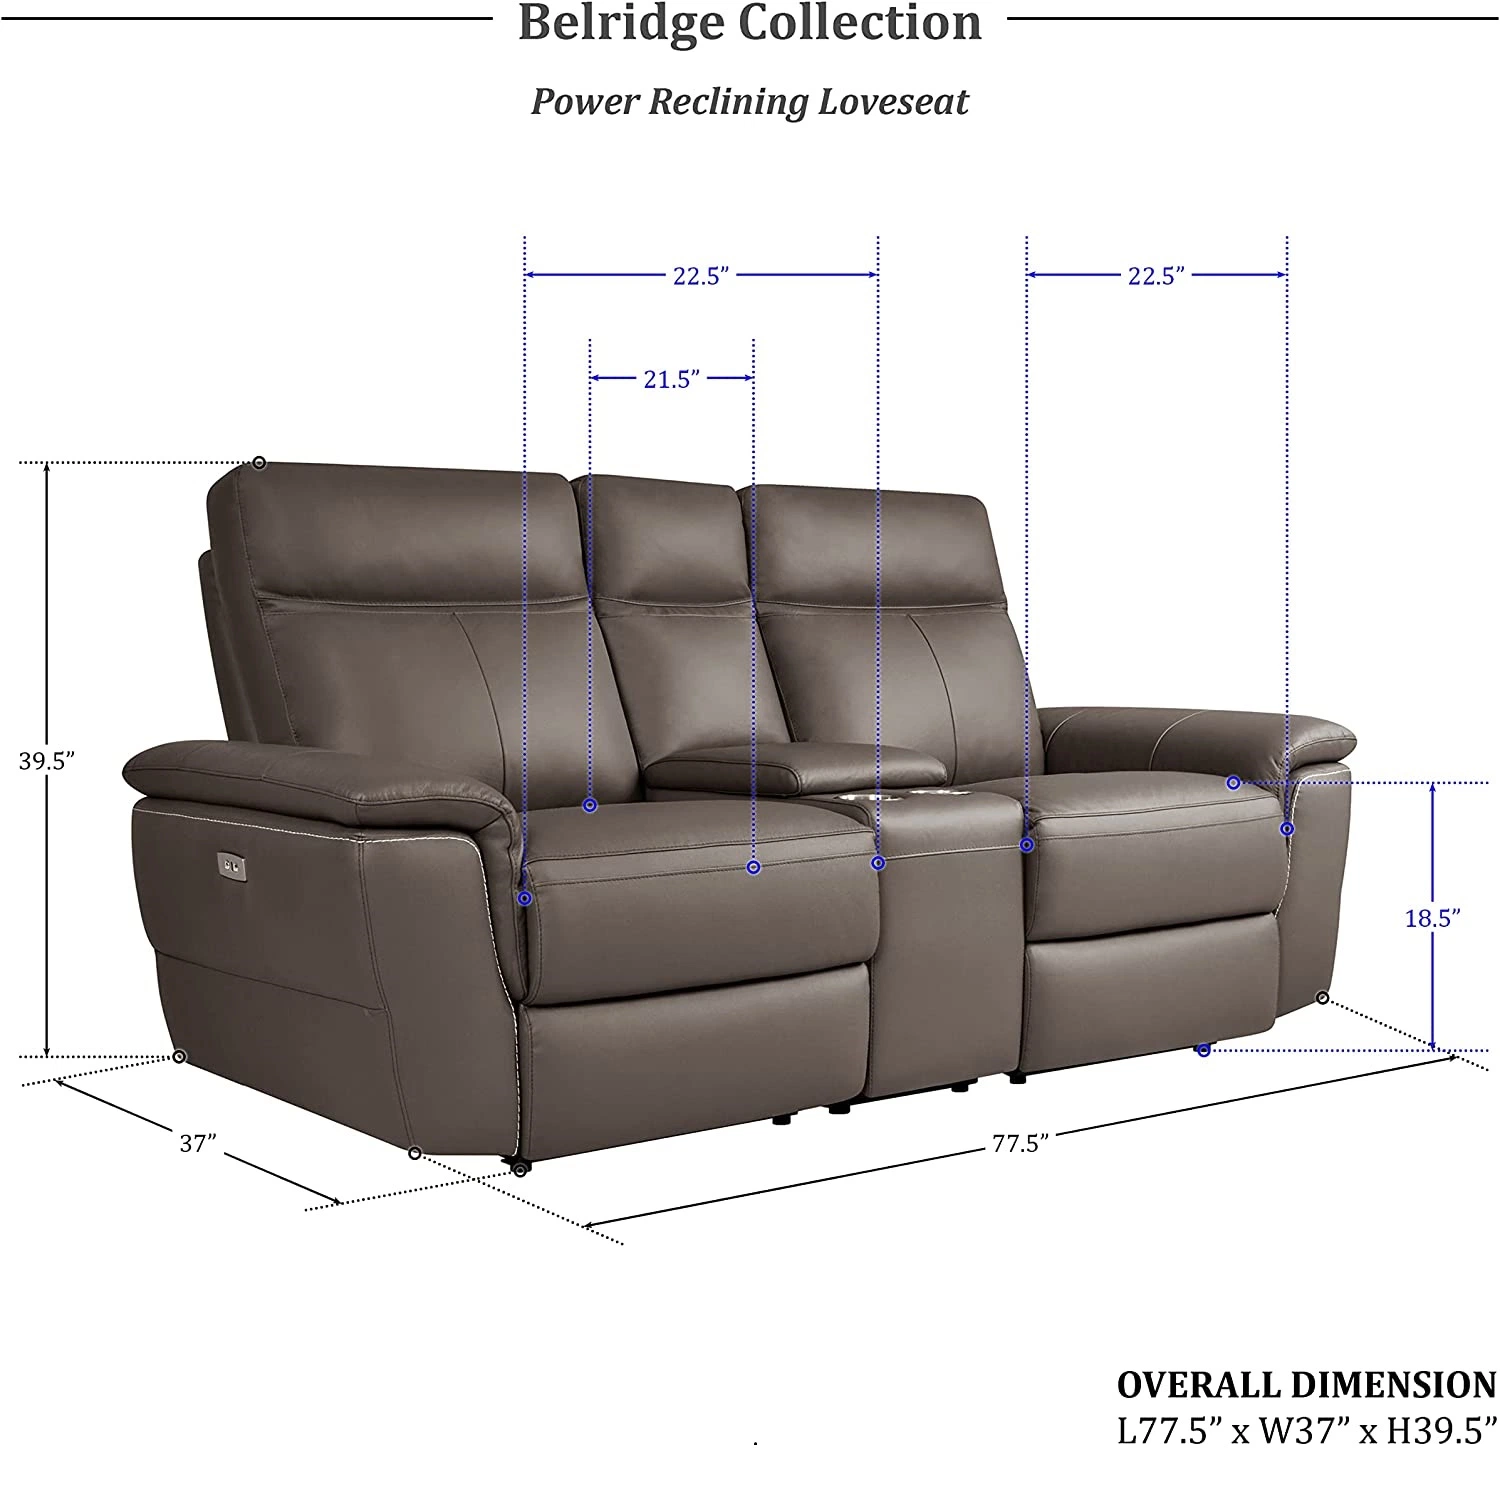 O Geeksofa moderno sofá-cama reclinável em tecido de 3 ou 2 lugares é reclinável Para mobiliário de sala de estar